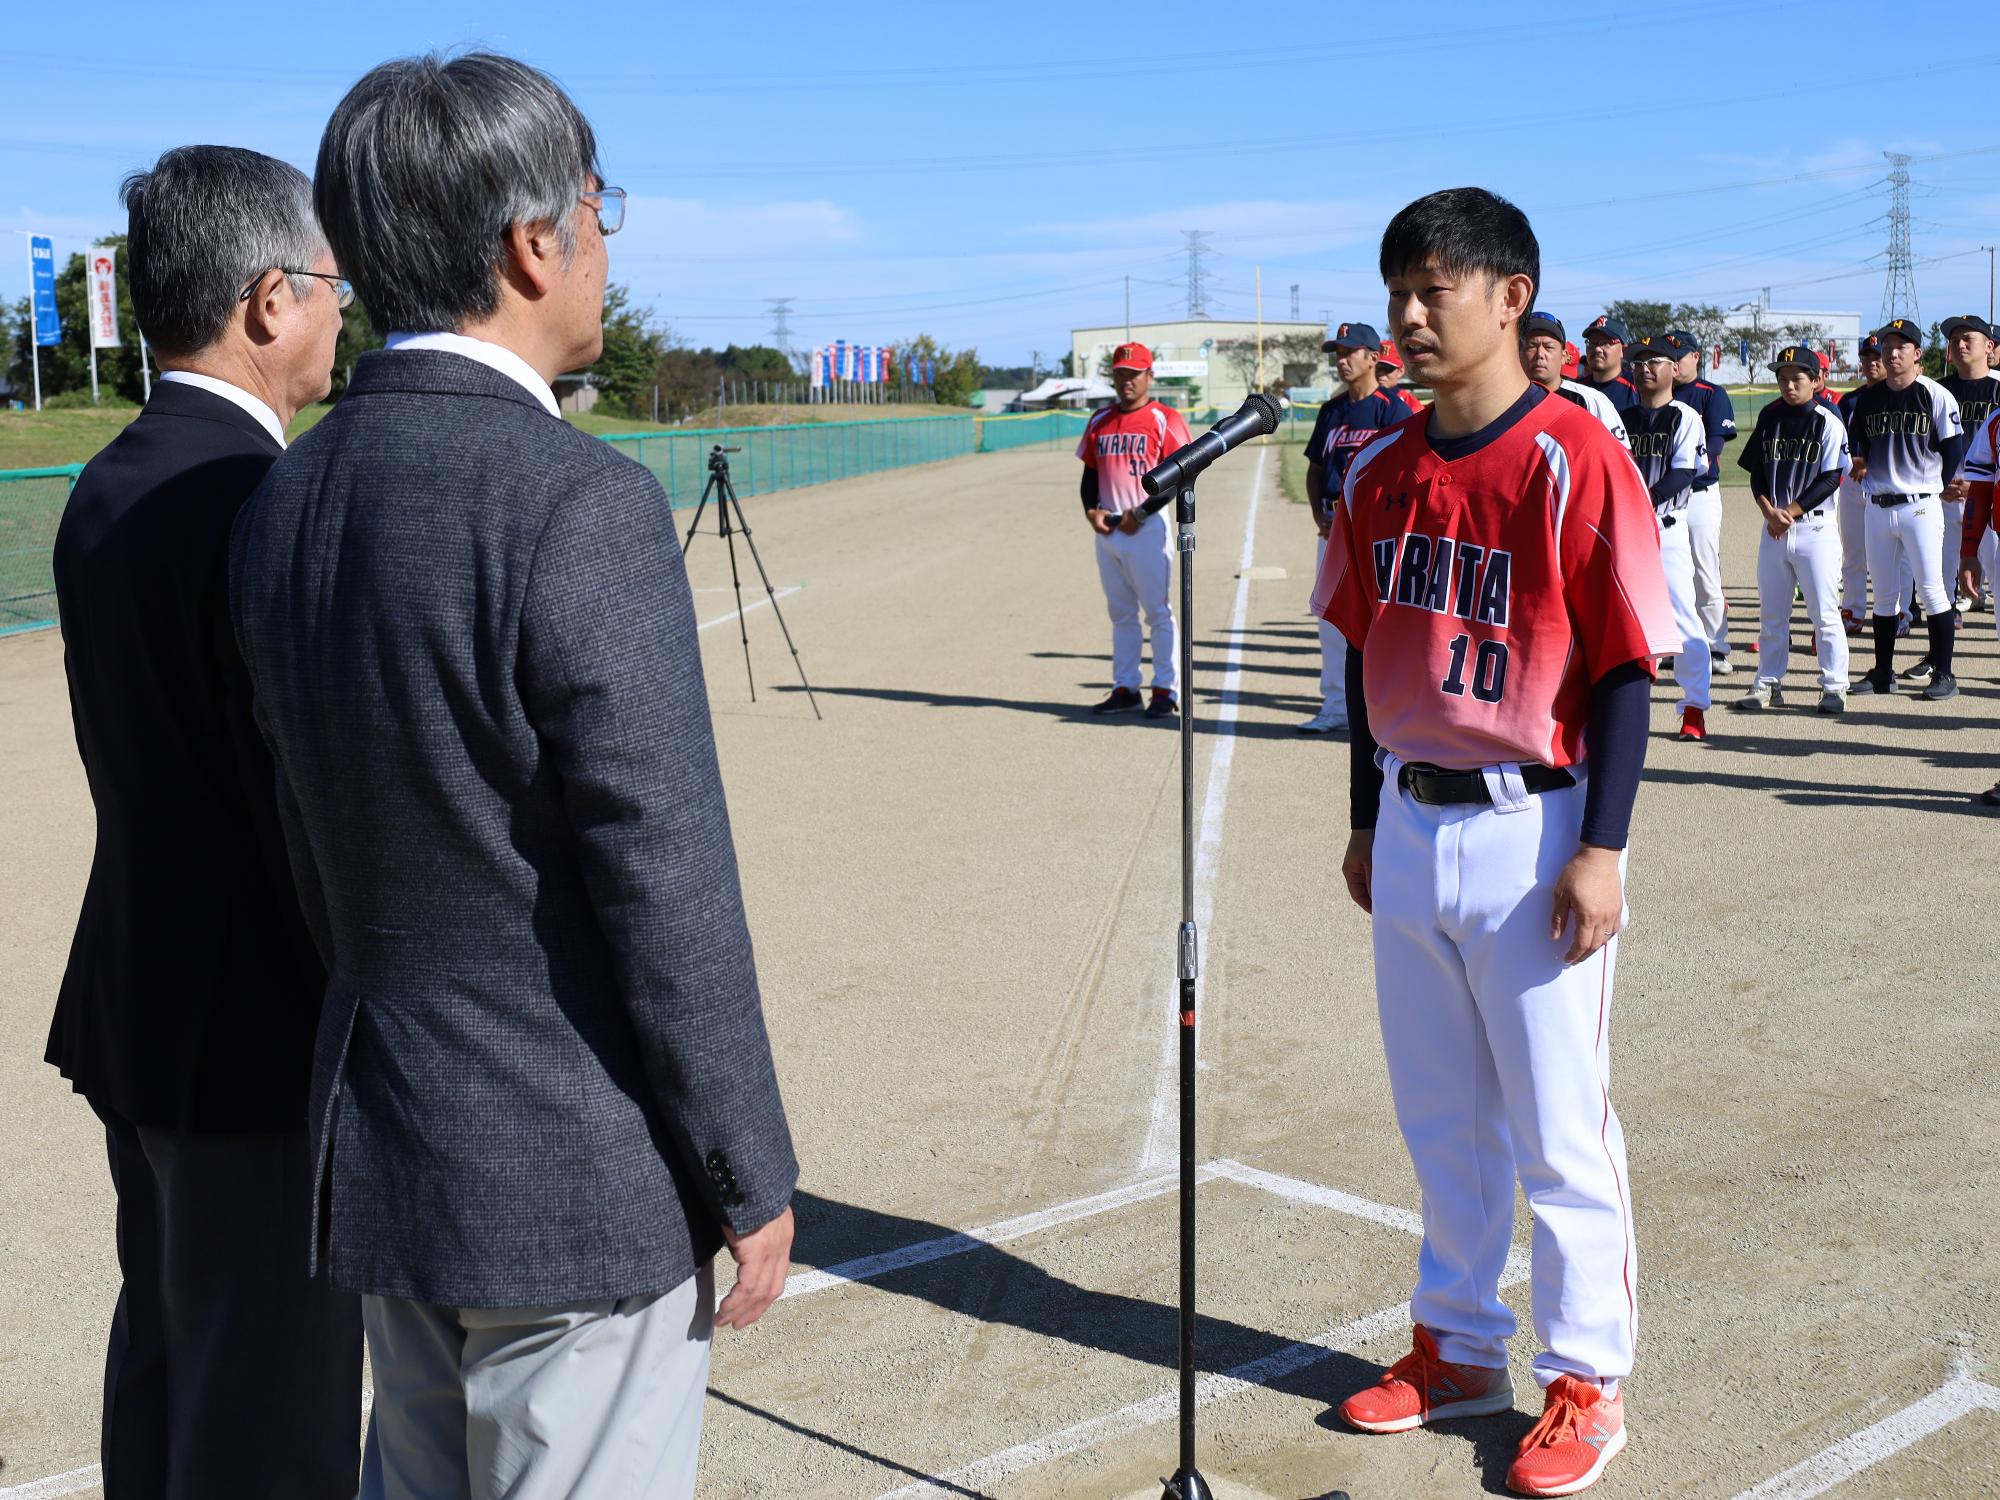 市町村対抗ソフトボール大会で選手宣誓を行う、平田村チーム主将の様子